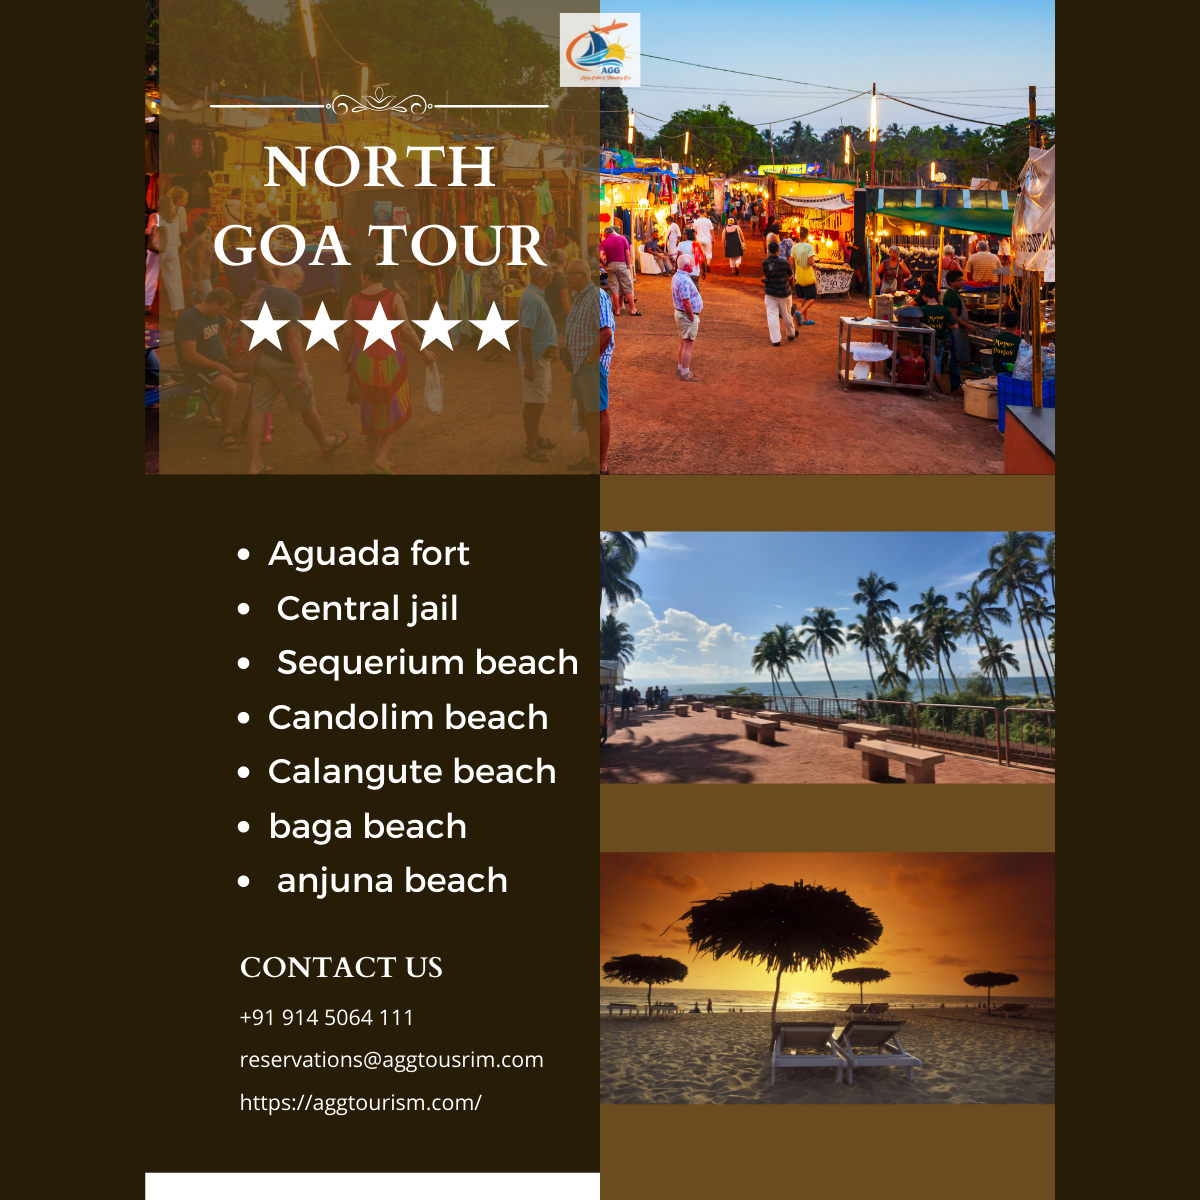 North GOA Tour (1200 × 1200 px)